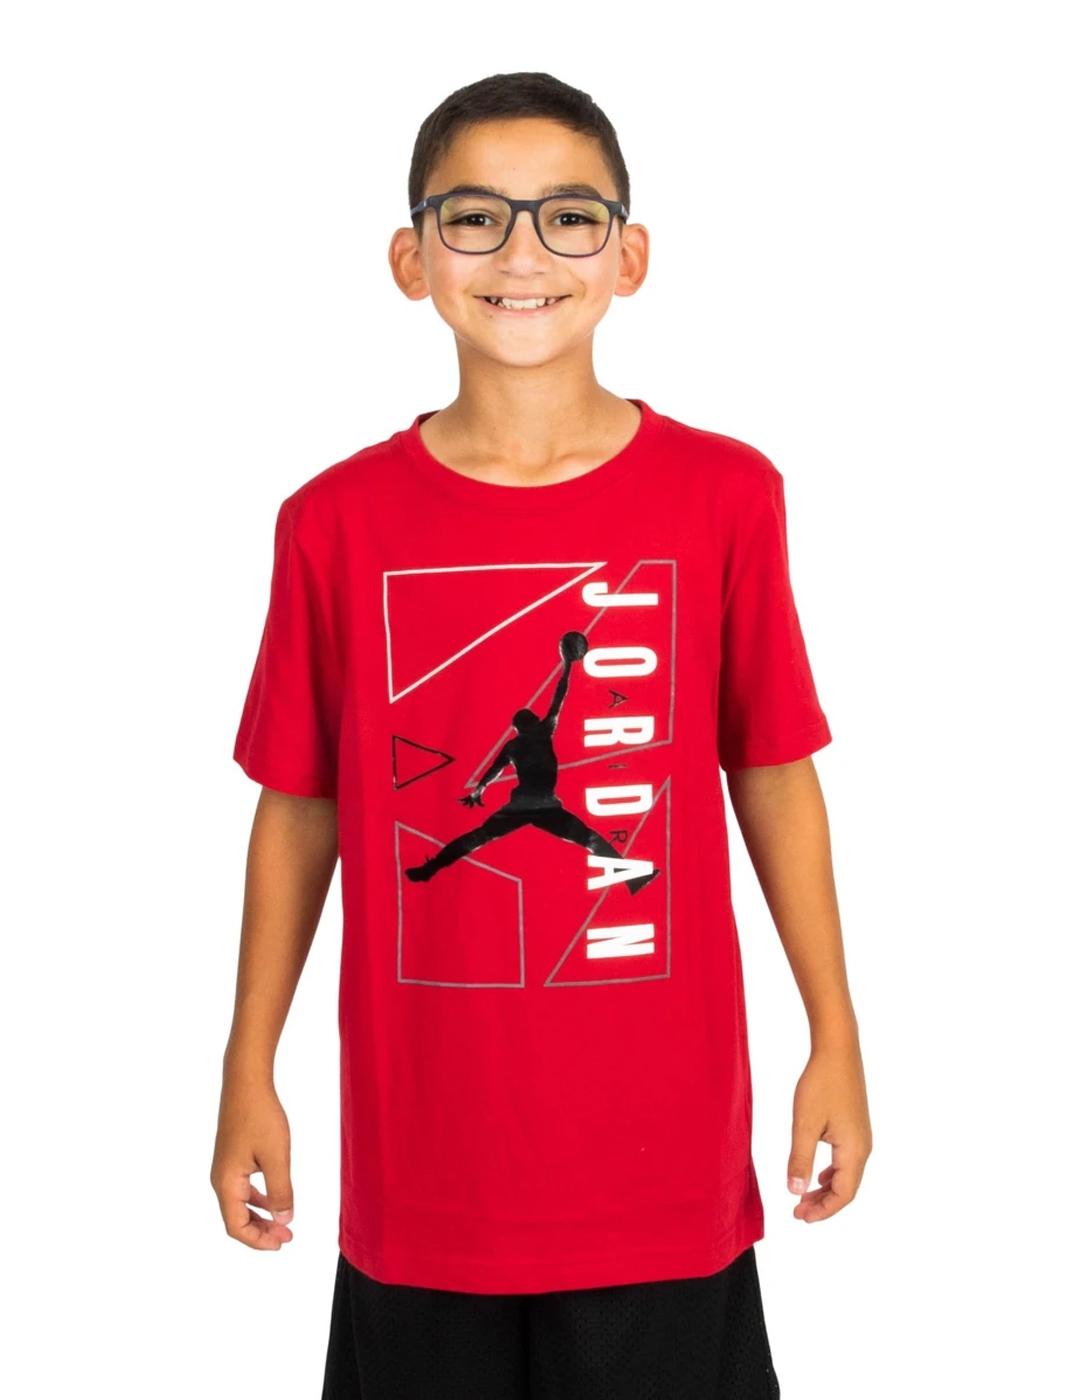 La Mejor Colección de Camisetas Júnior Jordan